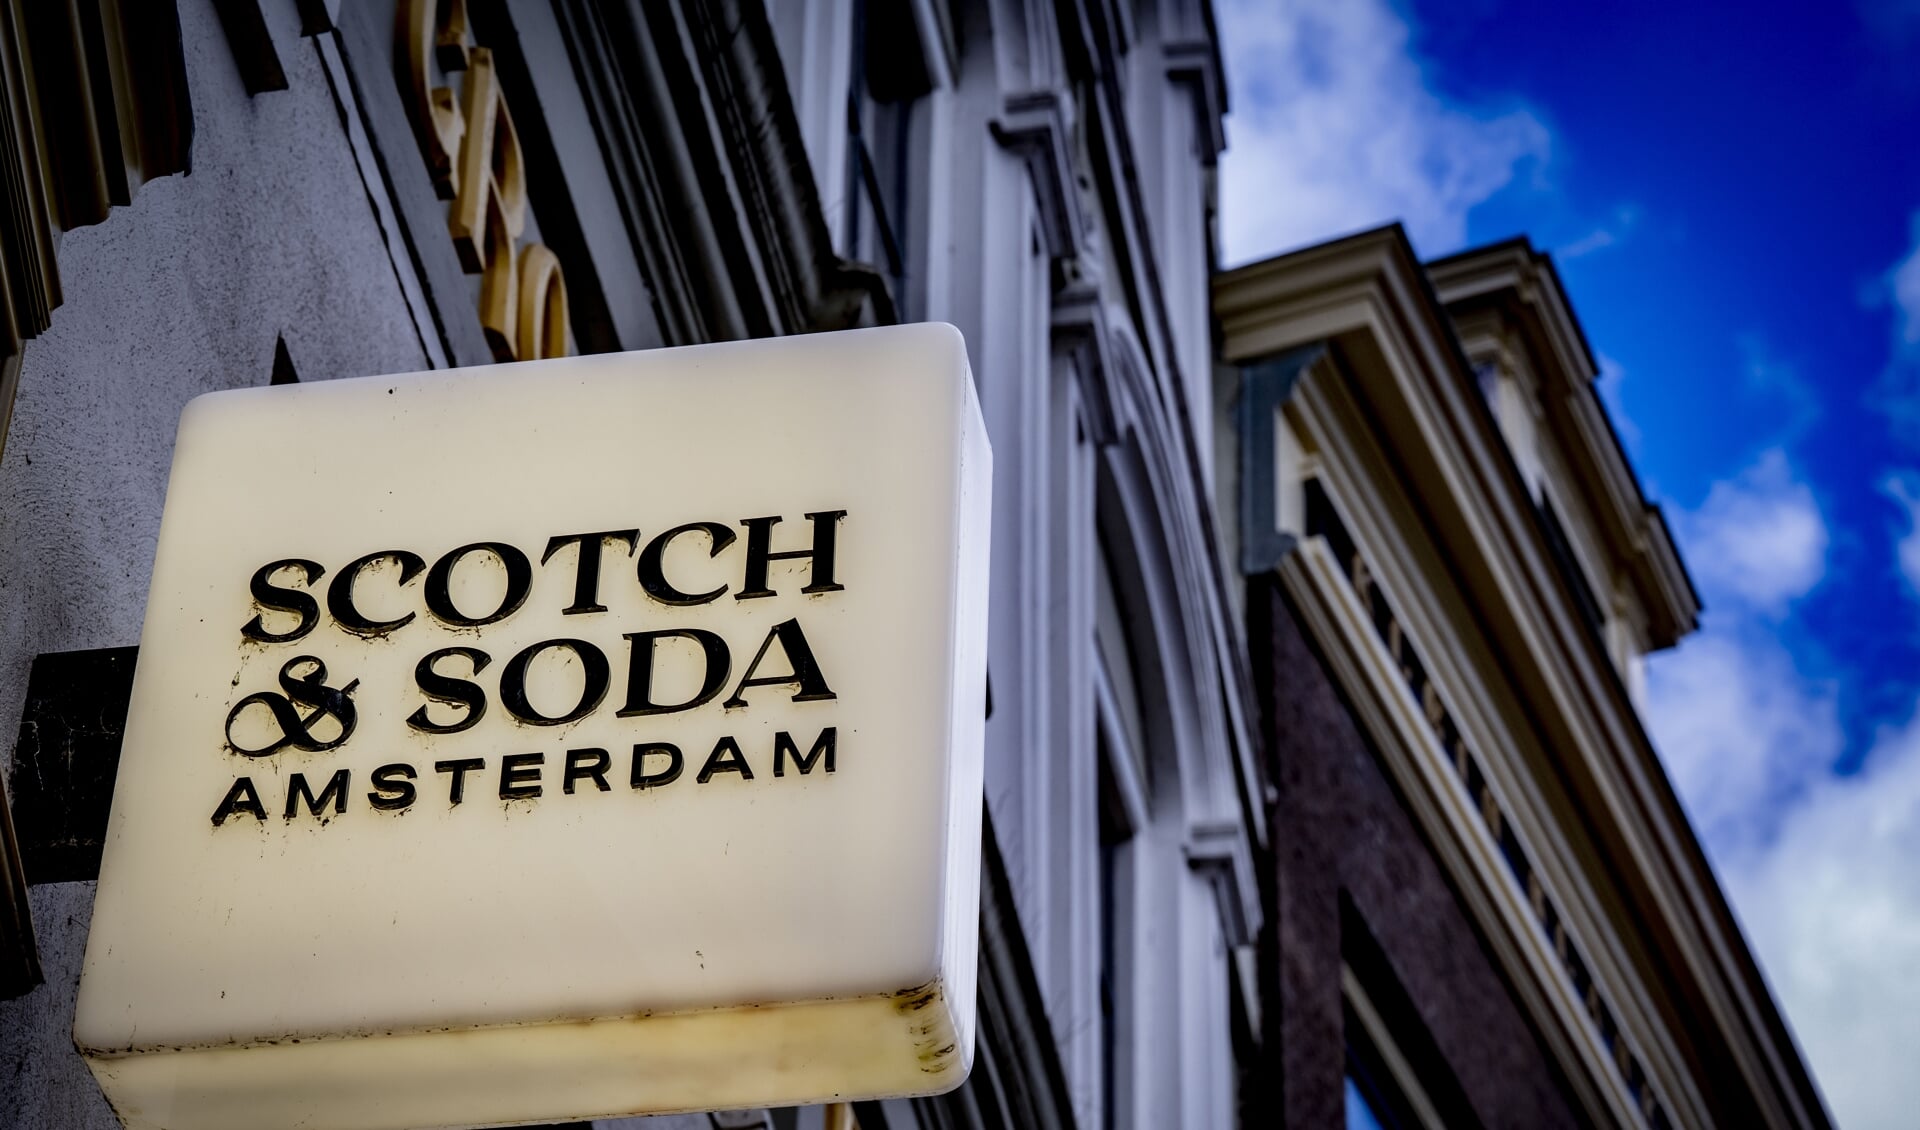 Scotch & Soda in Amsterdam.